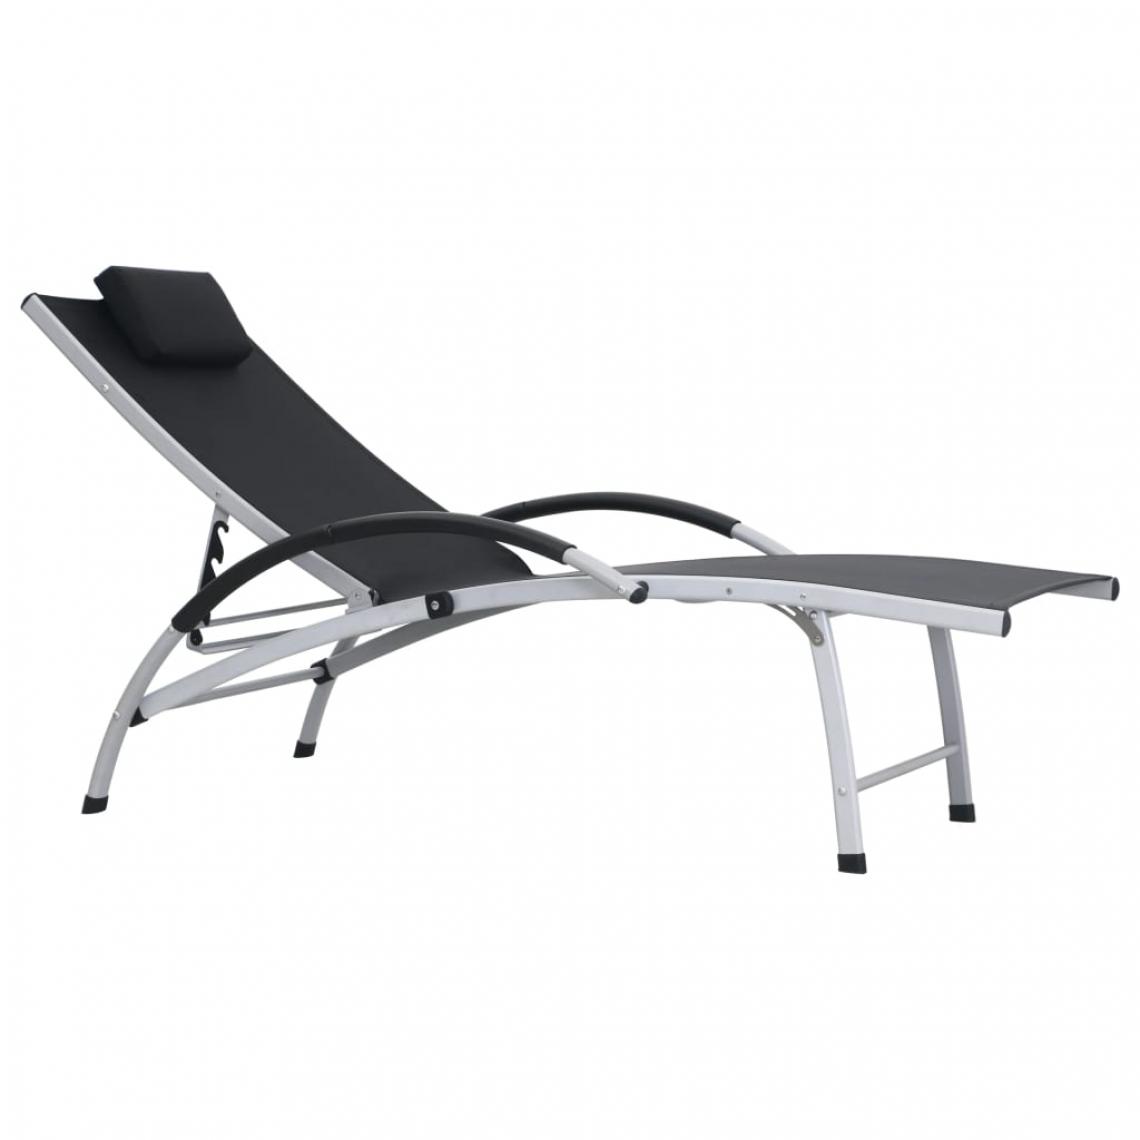 Chunhelife - Chaise longue Aluminium Textilène Noir - Transats, chaises longues